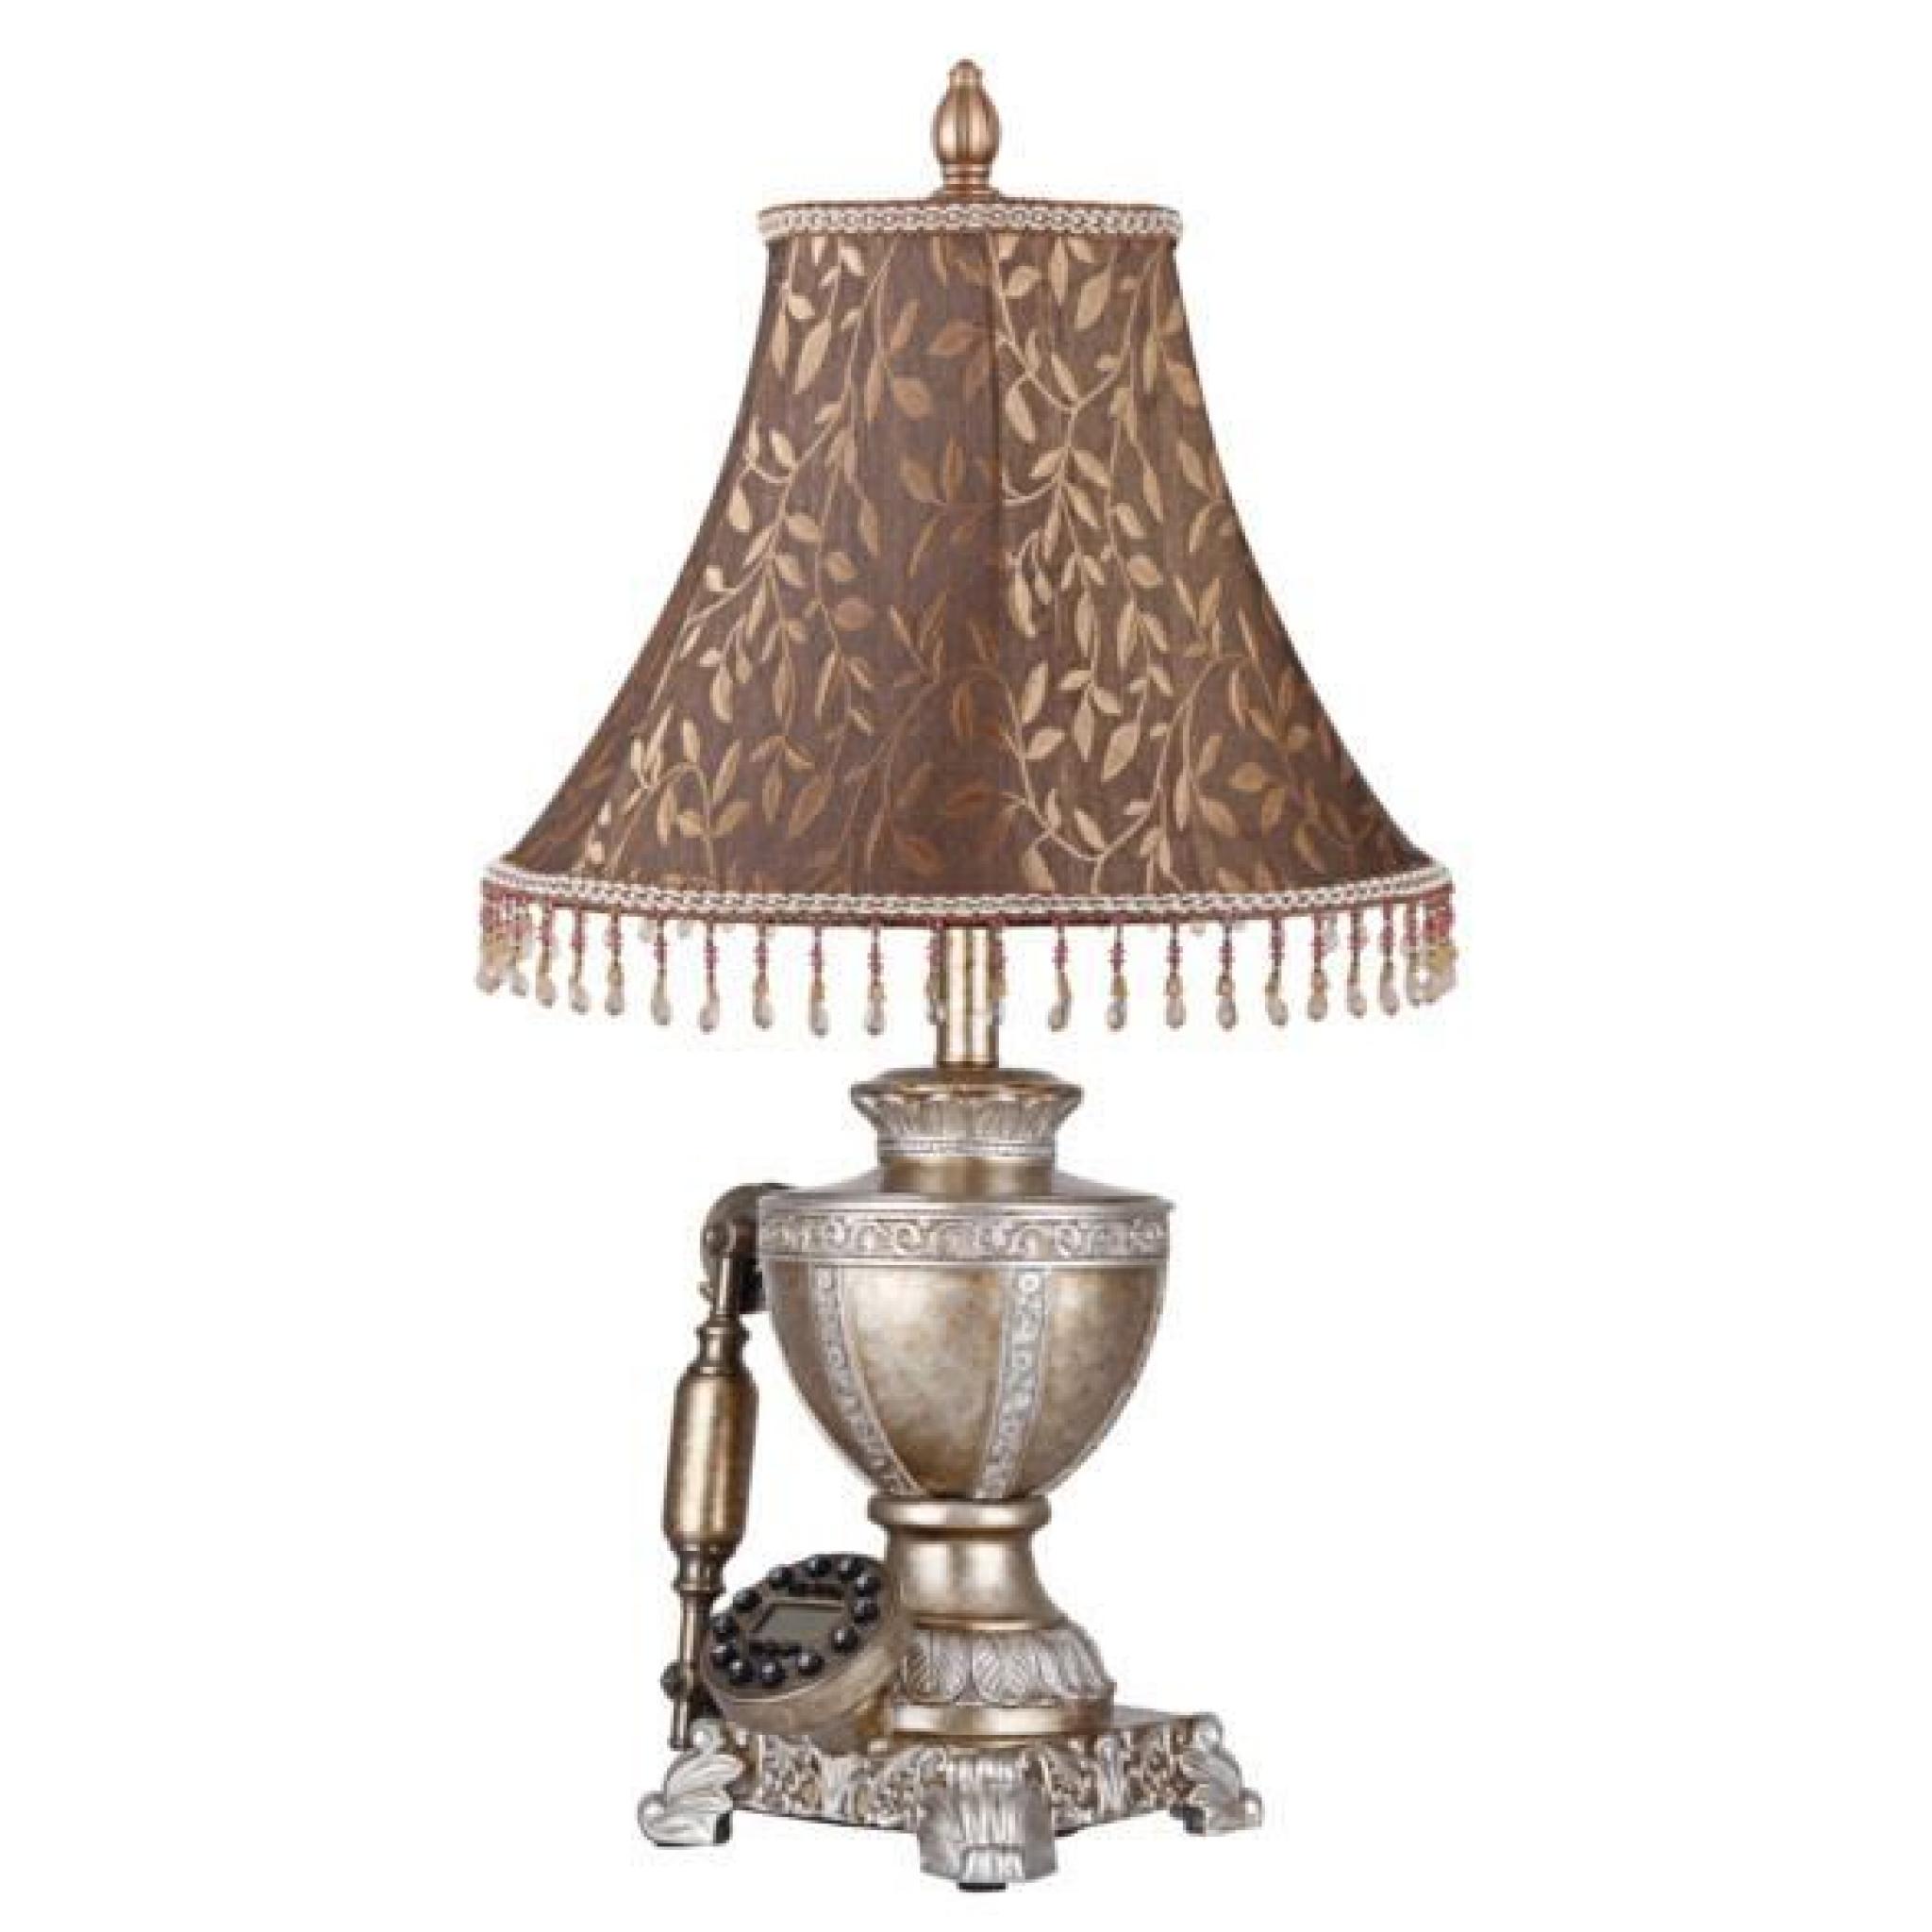 Luxueuse lampe de chevet téléphone victorien steampunk vintage chateau pas cher